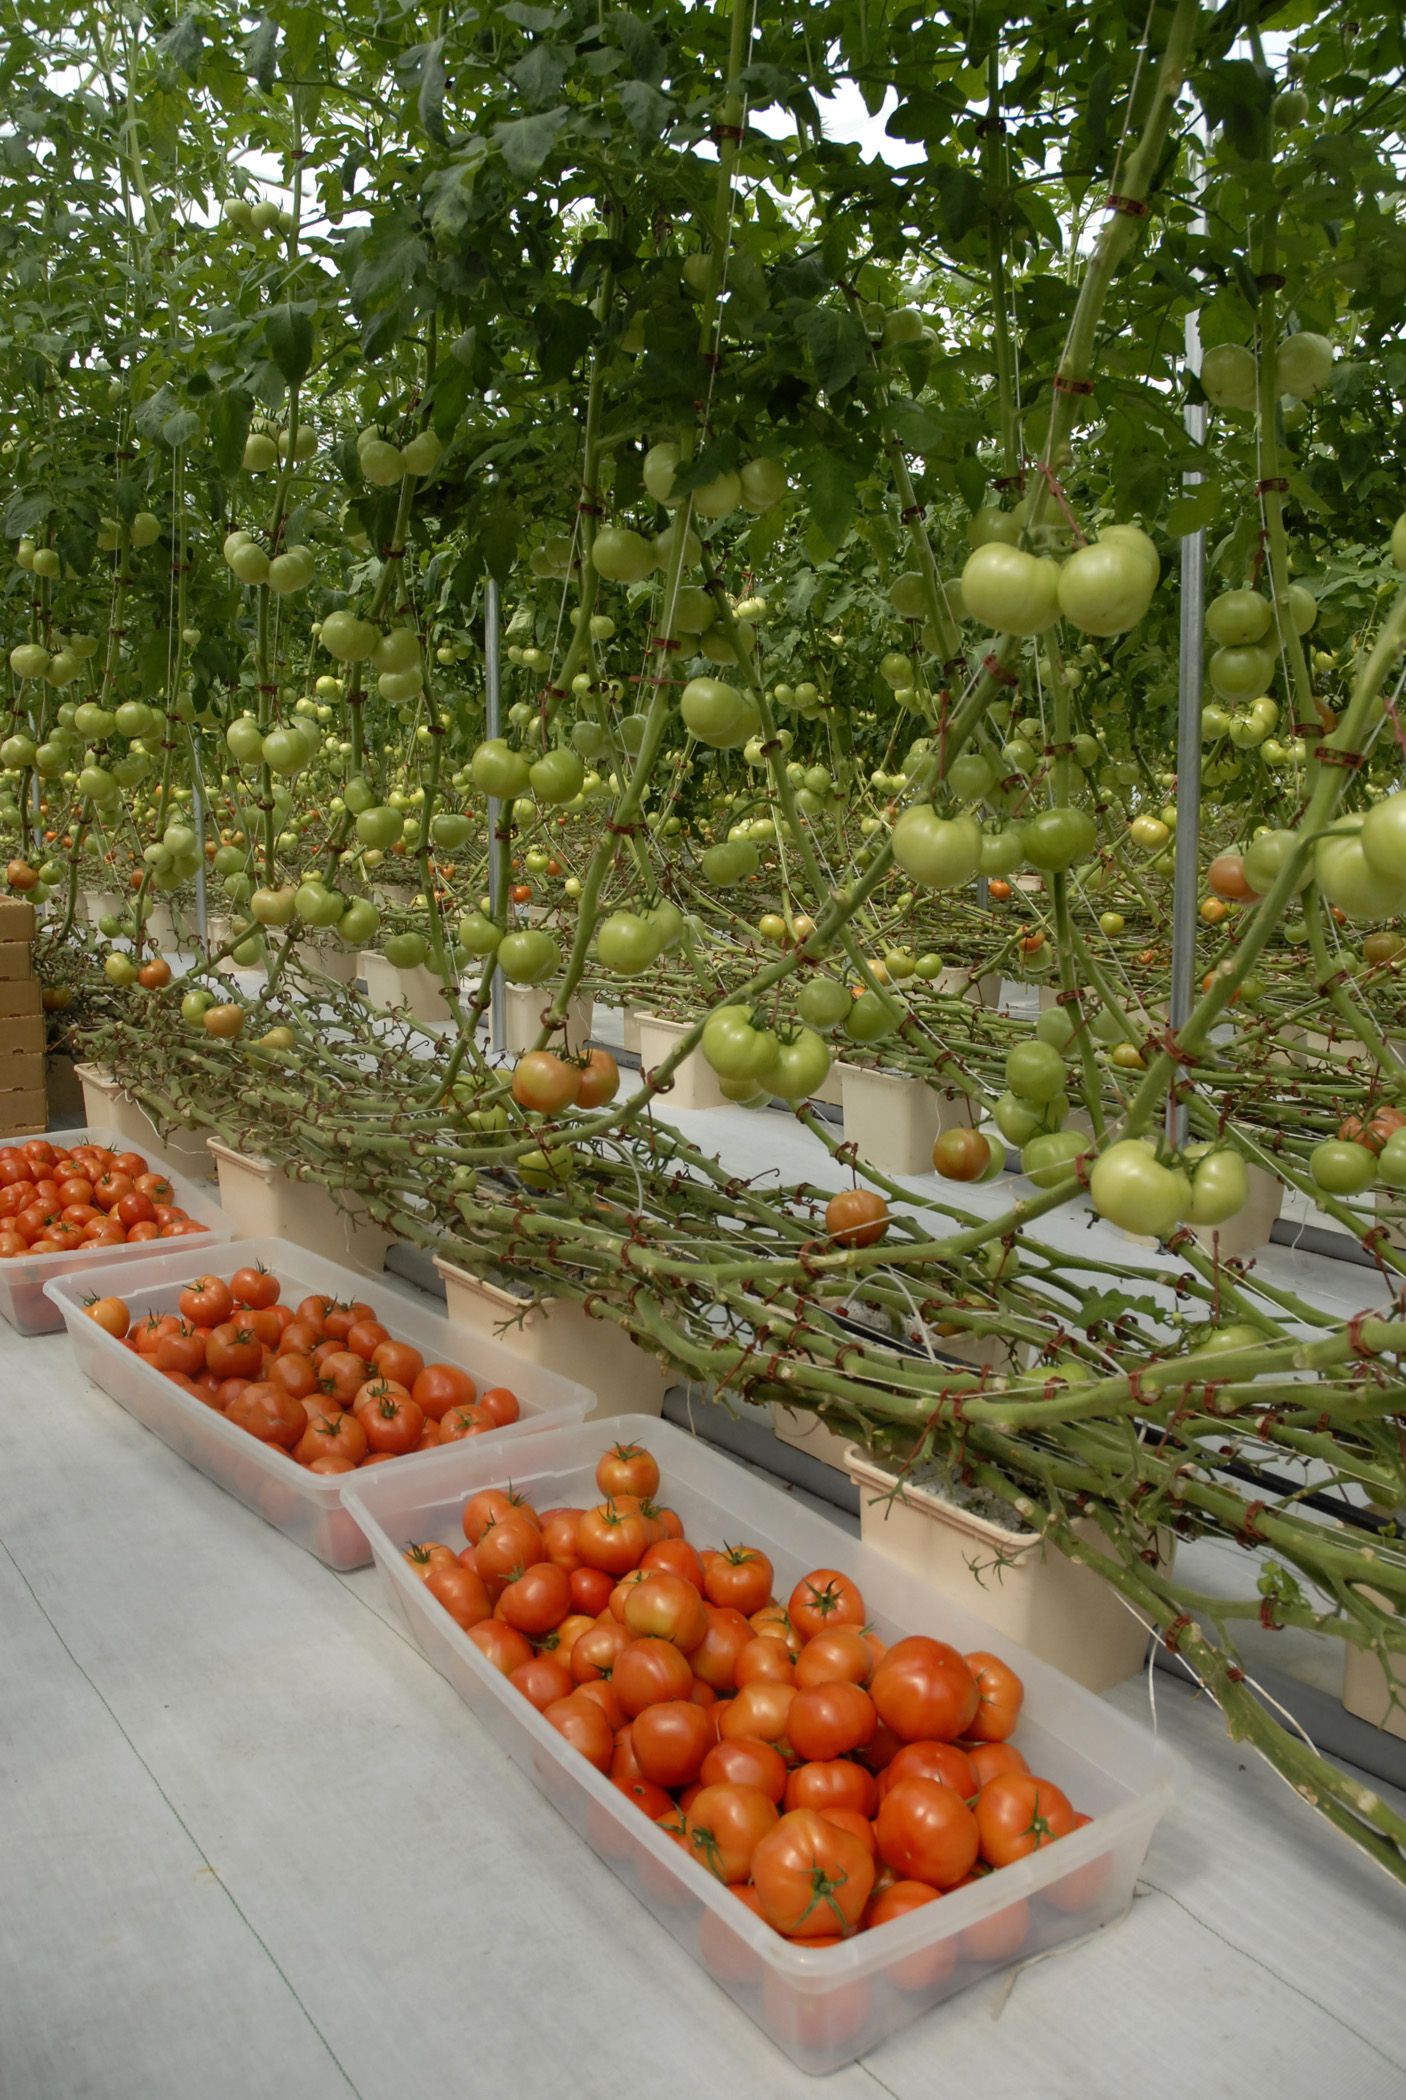 Томаты на гидропонике: процесс выращивания, семена, сорта томатов